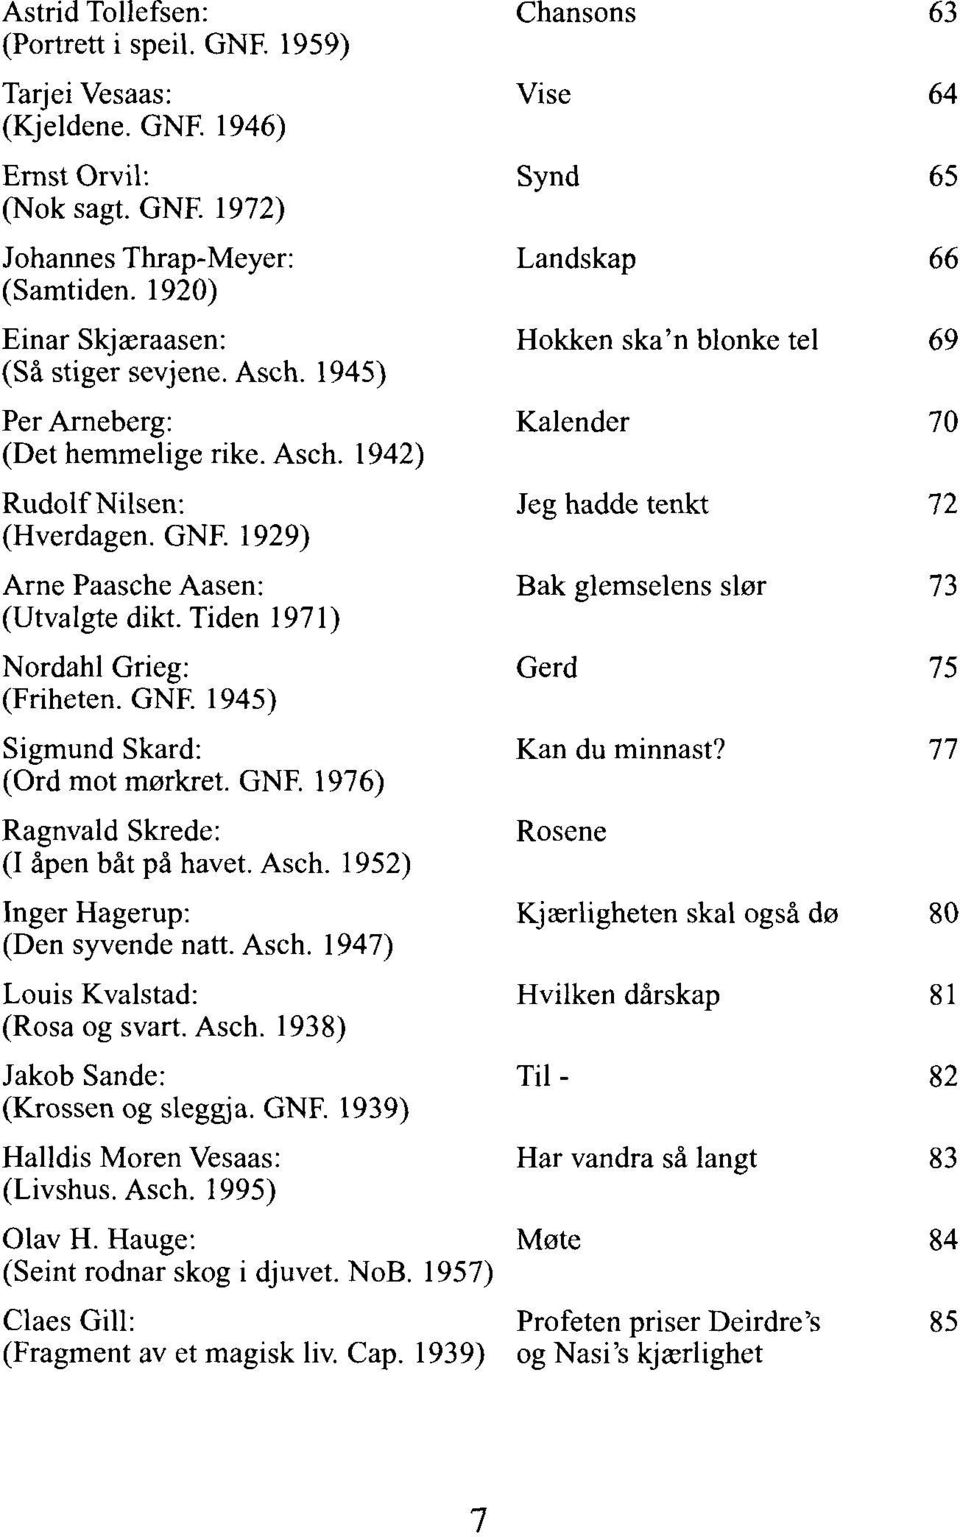 GNF. 1976) Ragnvald Skrede: (I åpen båt på havet. Asch. 1952) Inger Hagerup: (Den syvende natt. Asch. 1947) Louis Kvalstad: (Rosa og svart. Asch. 1938) Jakob Sande: (Krossen og sleggja. GNF.